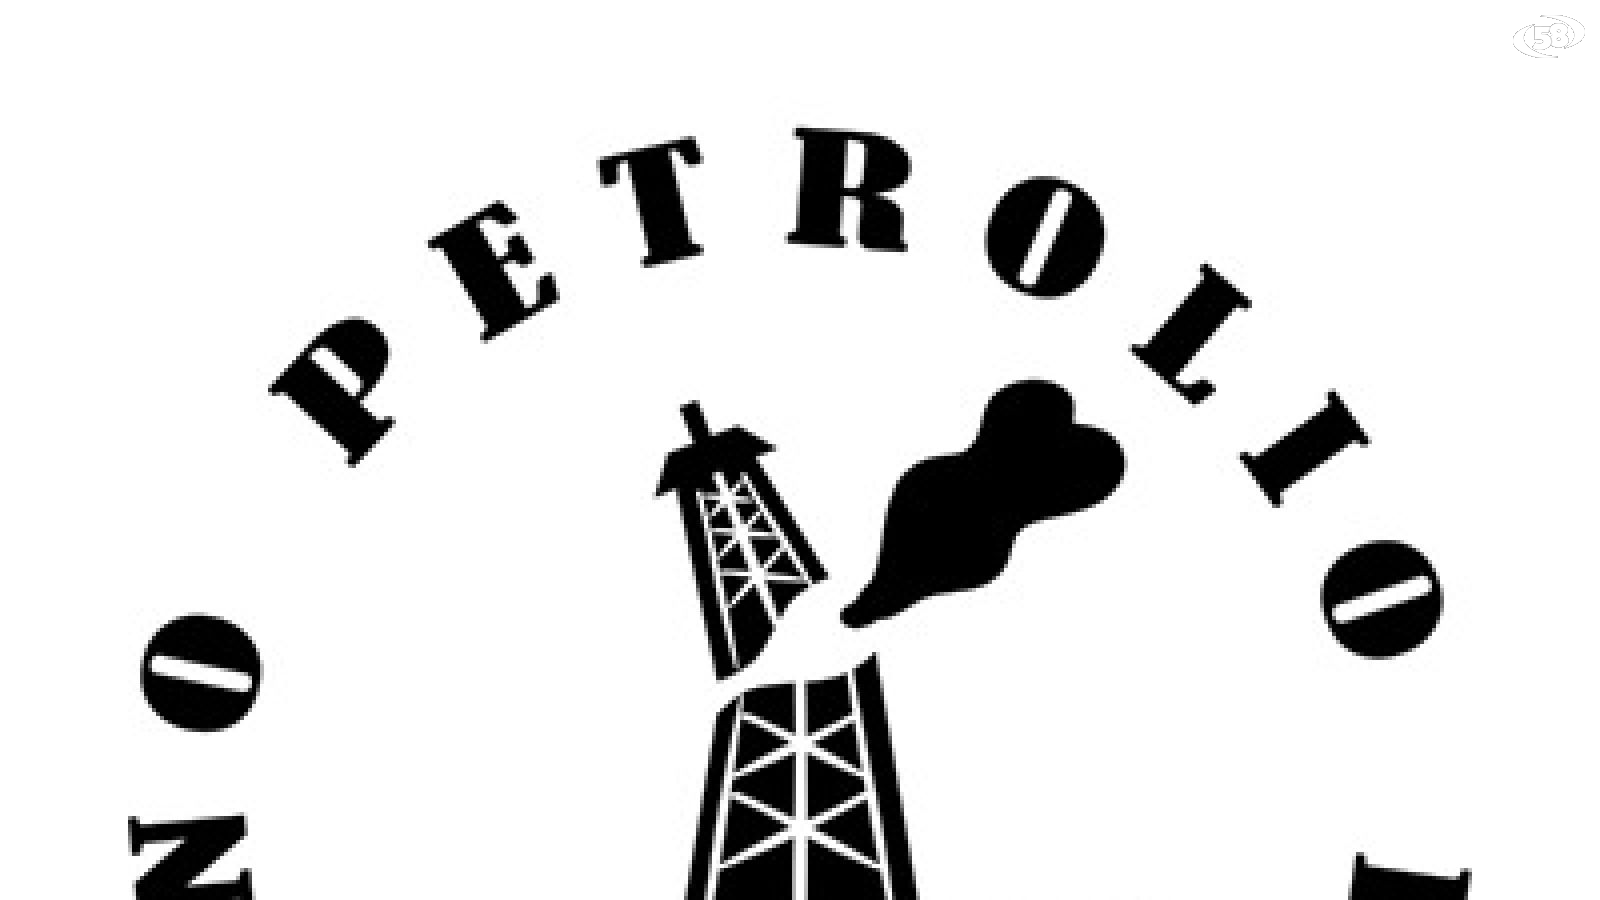 trivellazioni comitato petrolio logo